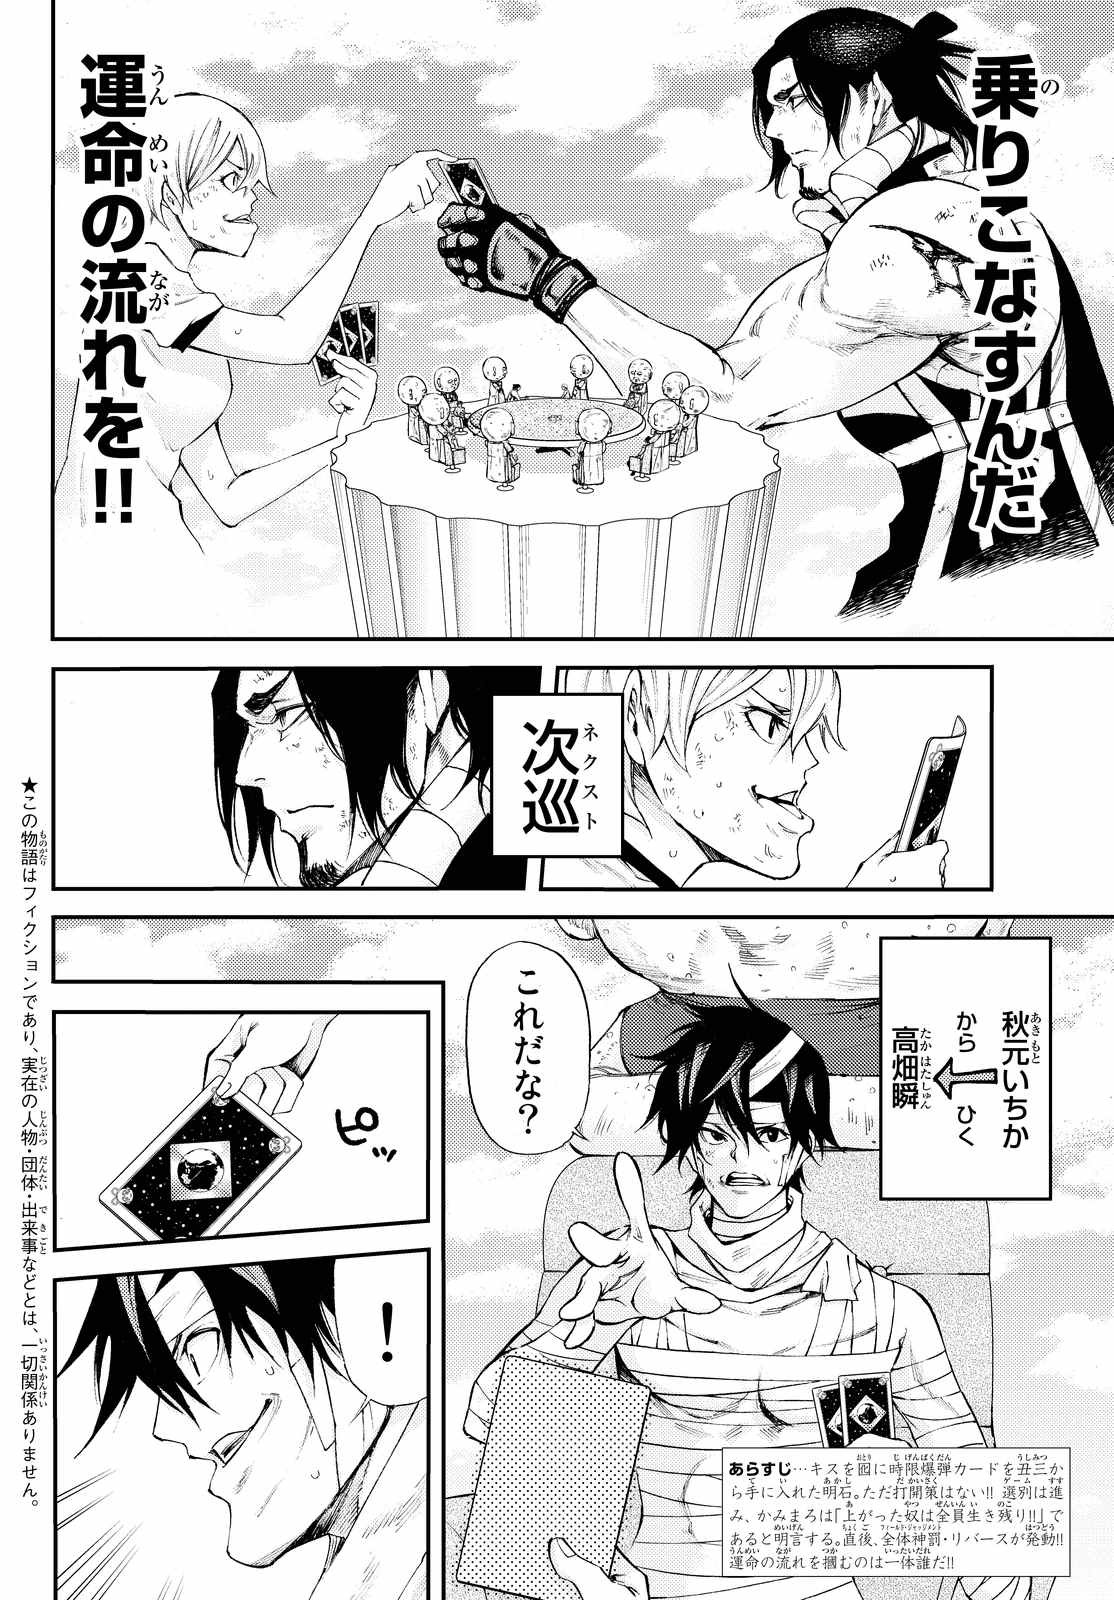 Kamisama_no_Ituori - Chapter 160 - Page 2